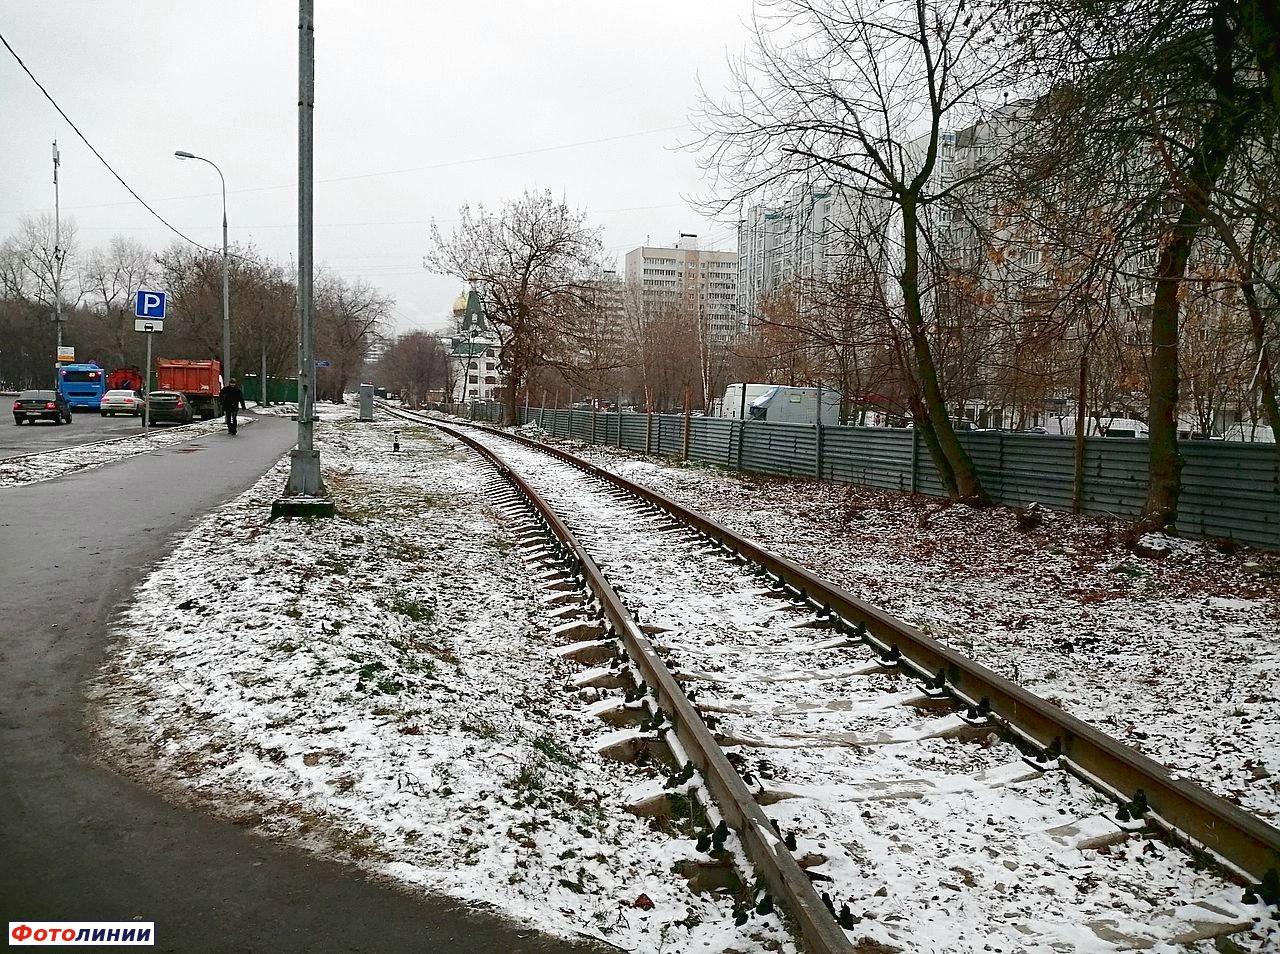 Подъездной путь к Курчатовскому институту, вид с ул. Берзарина в сторону пассажирских путей